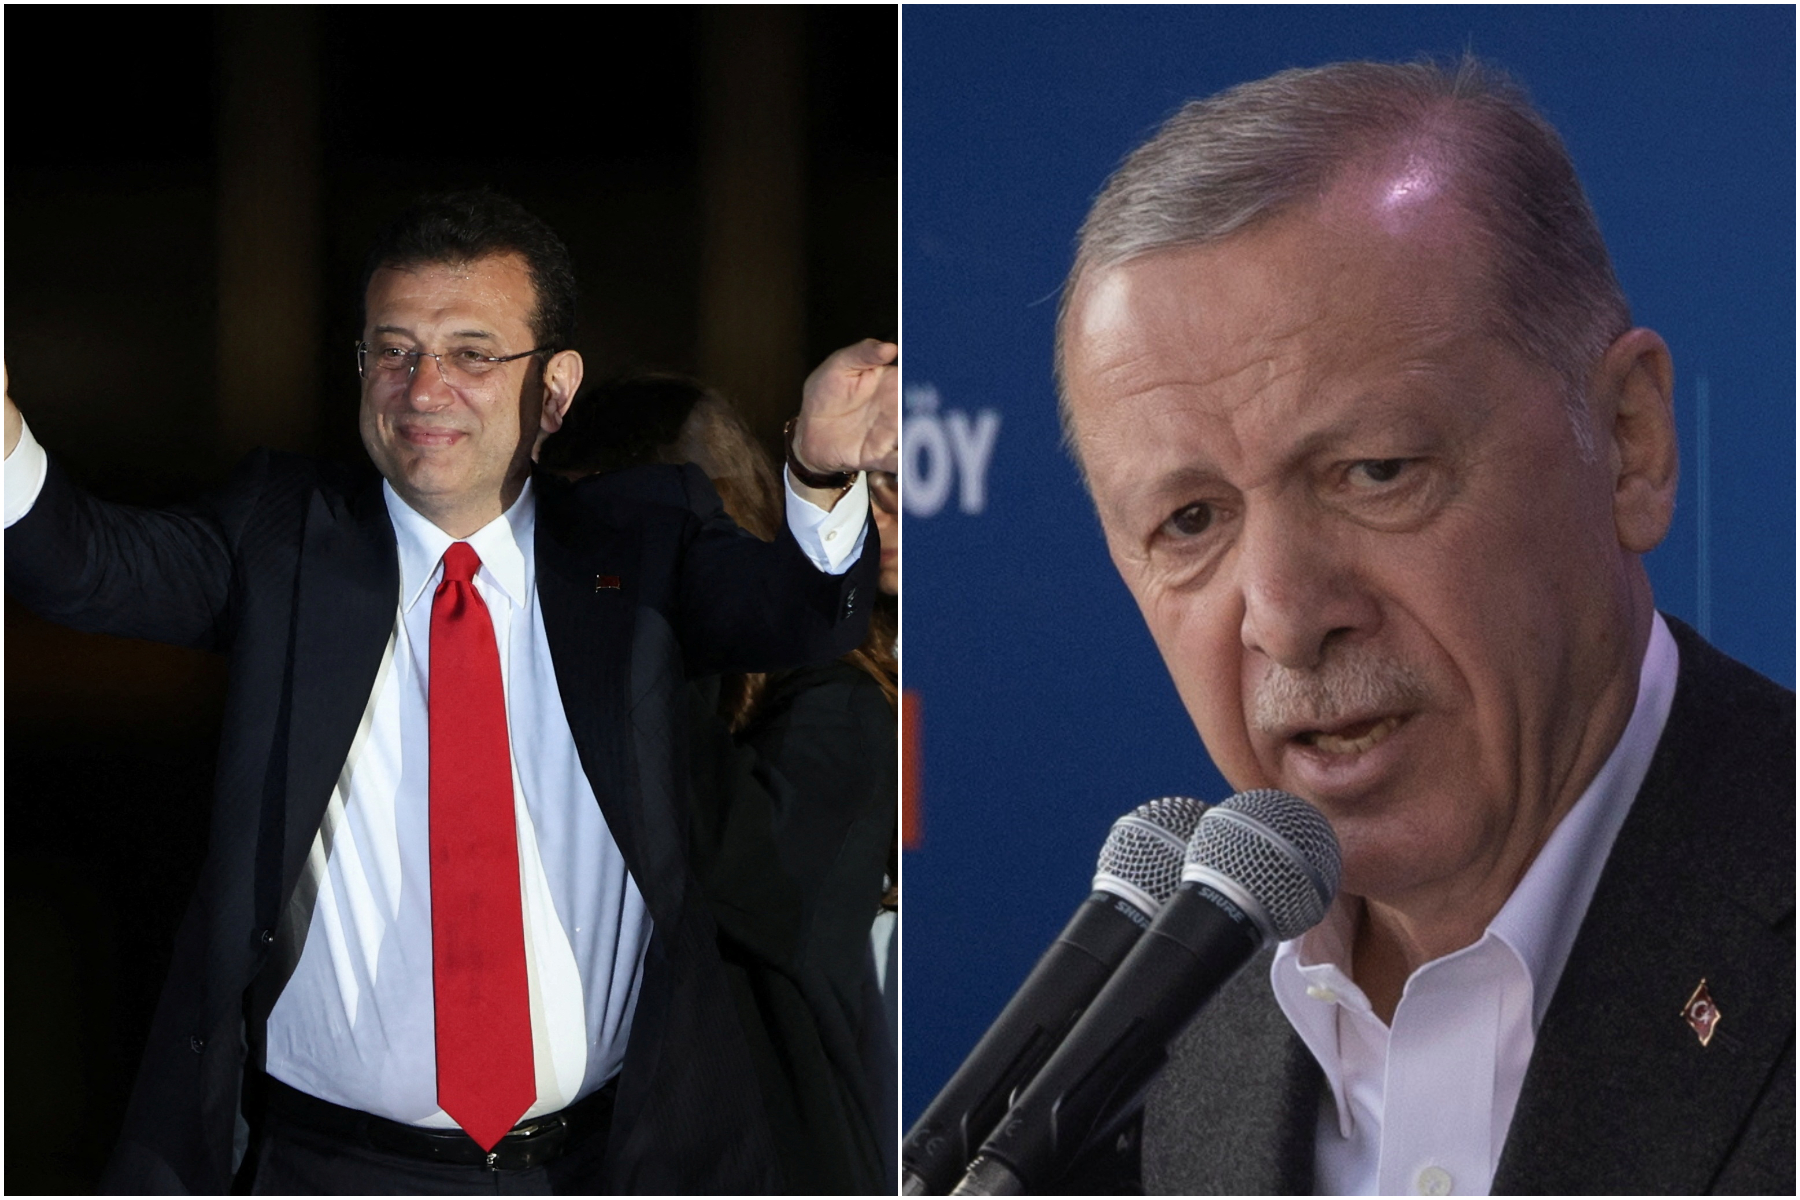 Εκλογές στην Τουρκία: Η επόμενη μέρα μετά την μεγάλη ήττα Ερντογάν